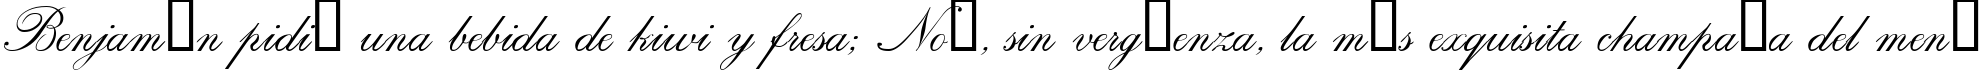 Пример написания шрифтом Calligraphia One текста на испанском